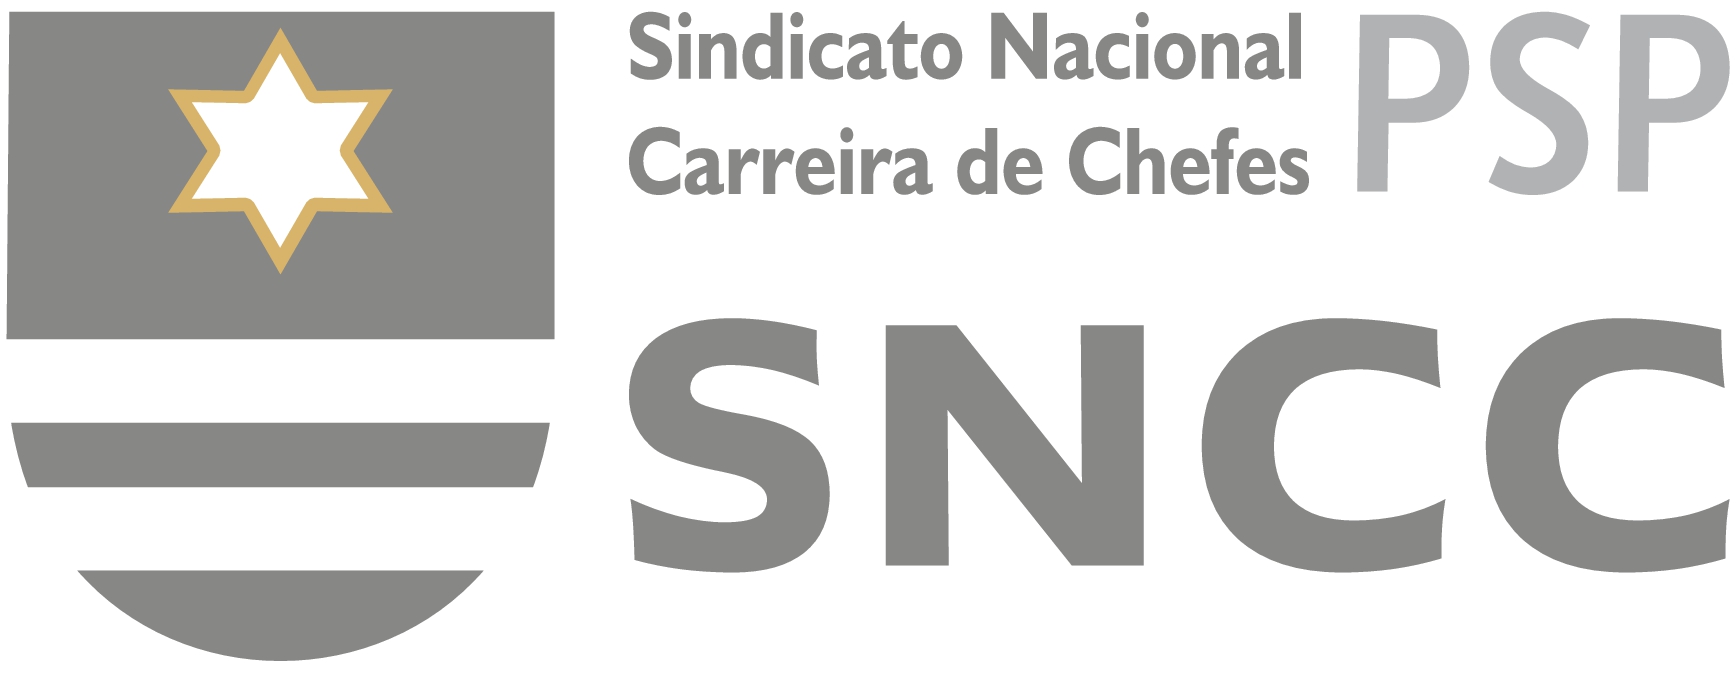 Comunicado SNCC-PSP – Promoções